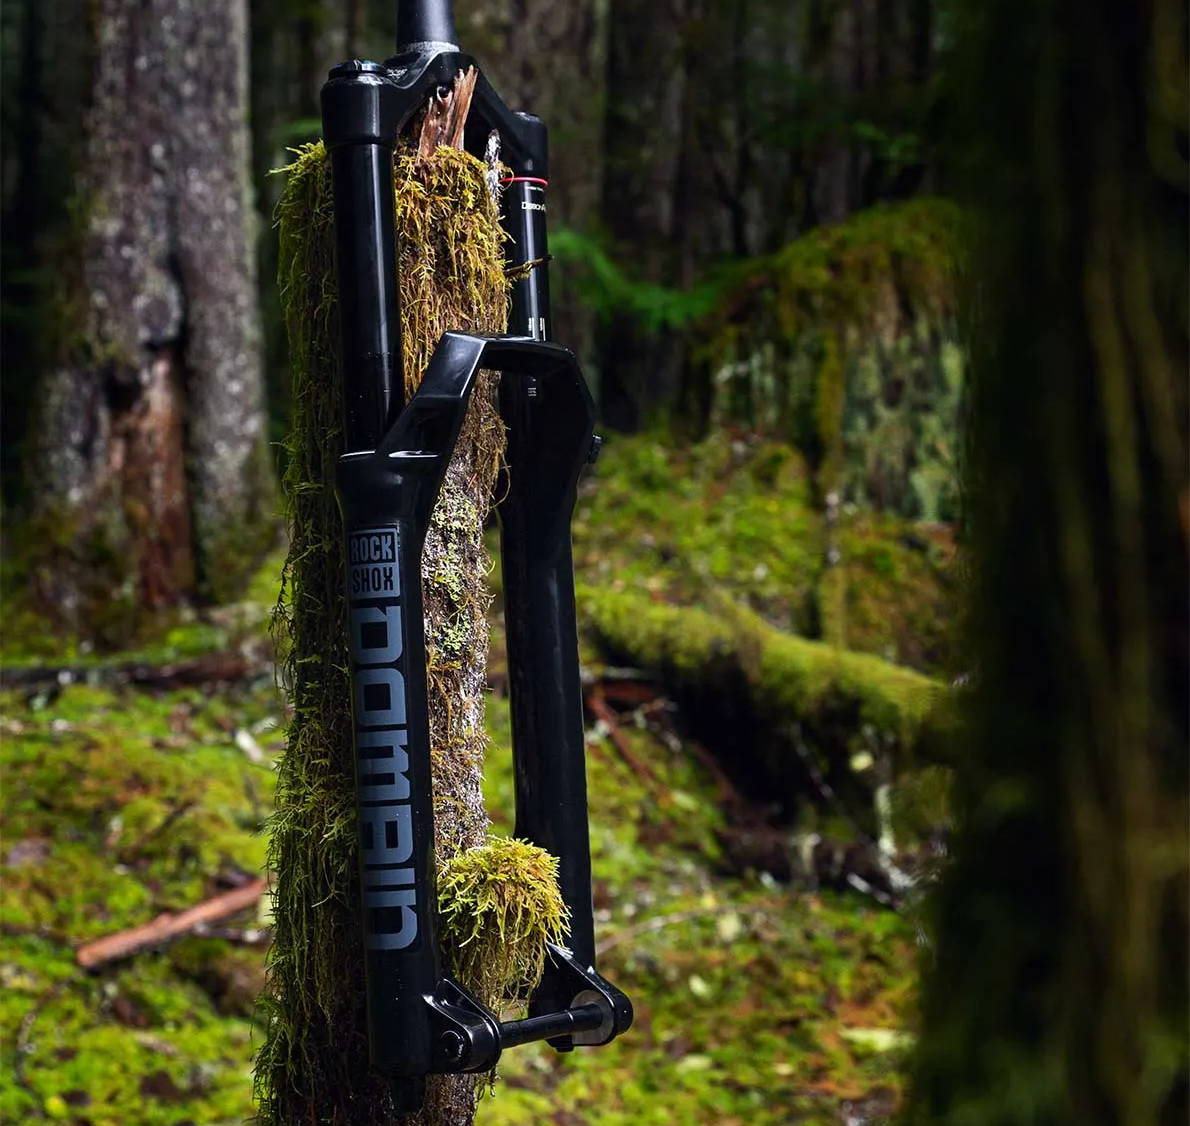 rockshox domain mountain bike fork handing on a mossy tree